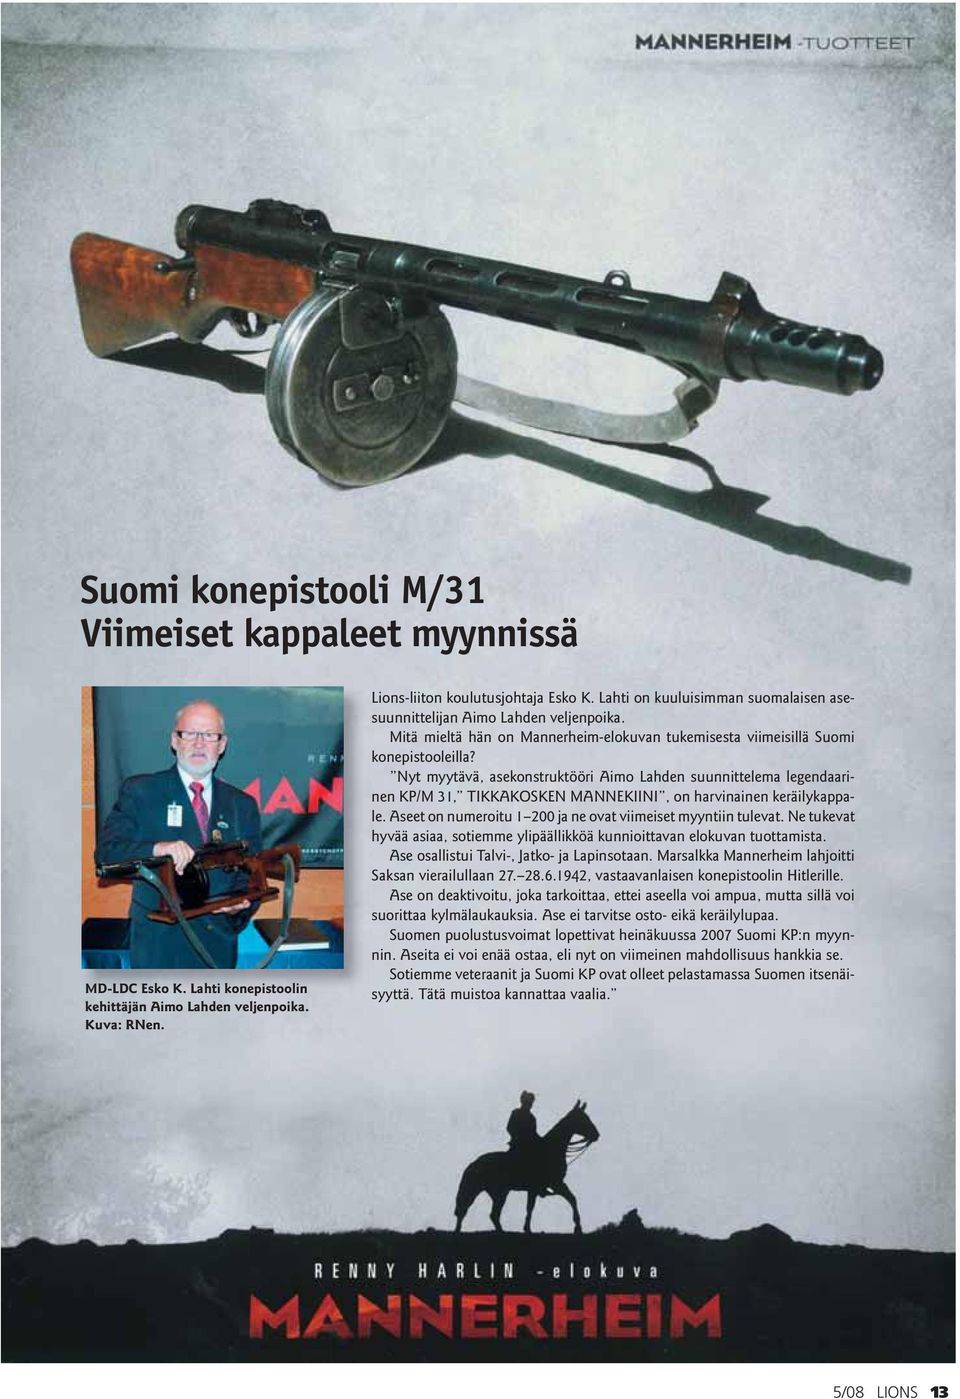 Nyt myytävä, asekonstruktööri Aimo Lahden suunnittelema legendaarinen KP/M 31, TIKKAKOSKEN MANNEKIINI, on harvinainen keräilykappale. Aseet on numeroitu 1 200 ja ne ovat viimeiset myyntiin tulevat.